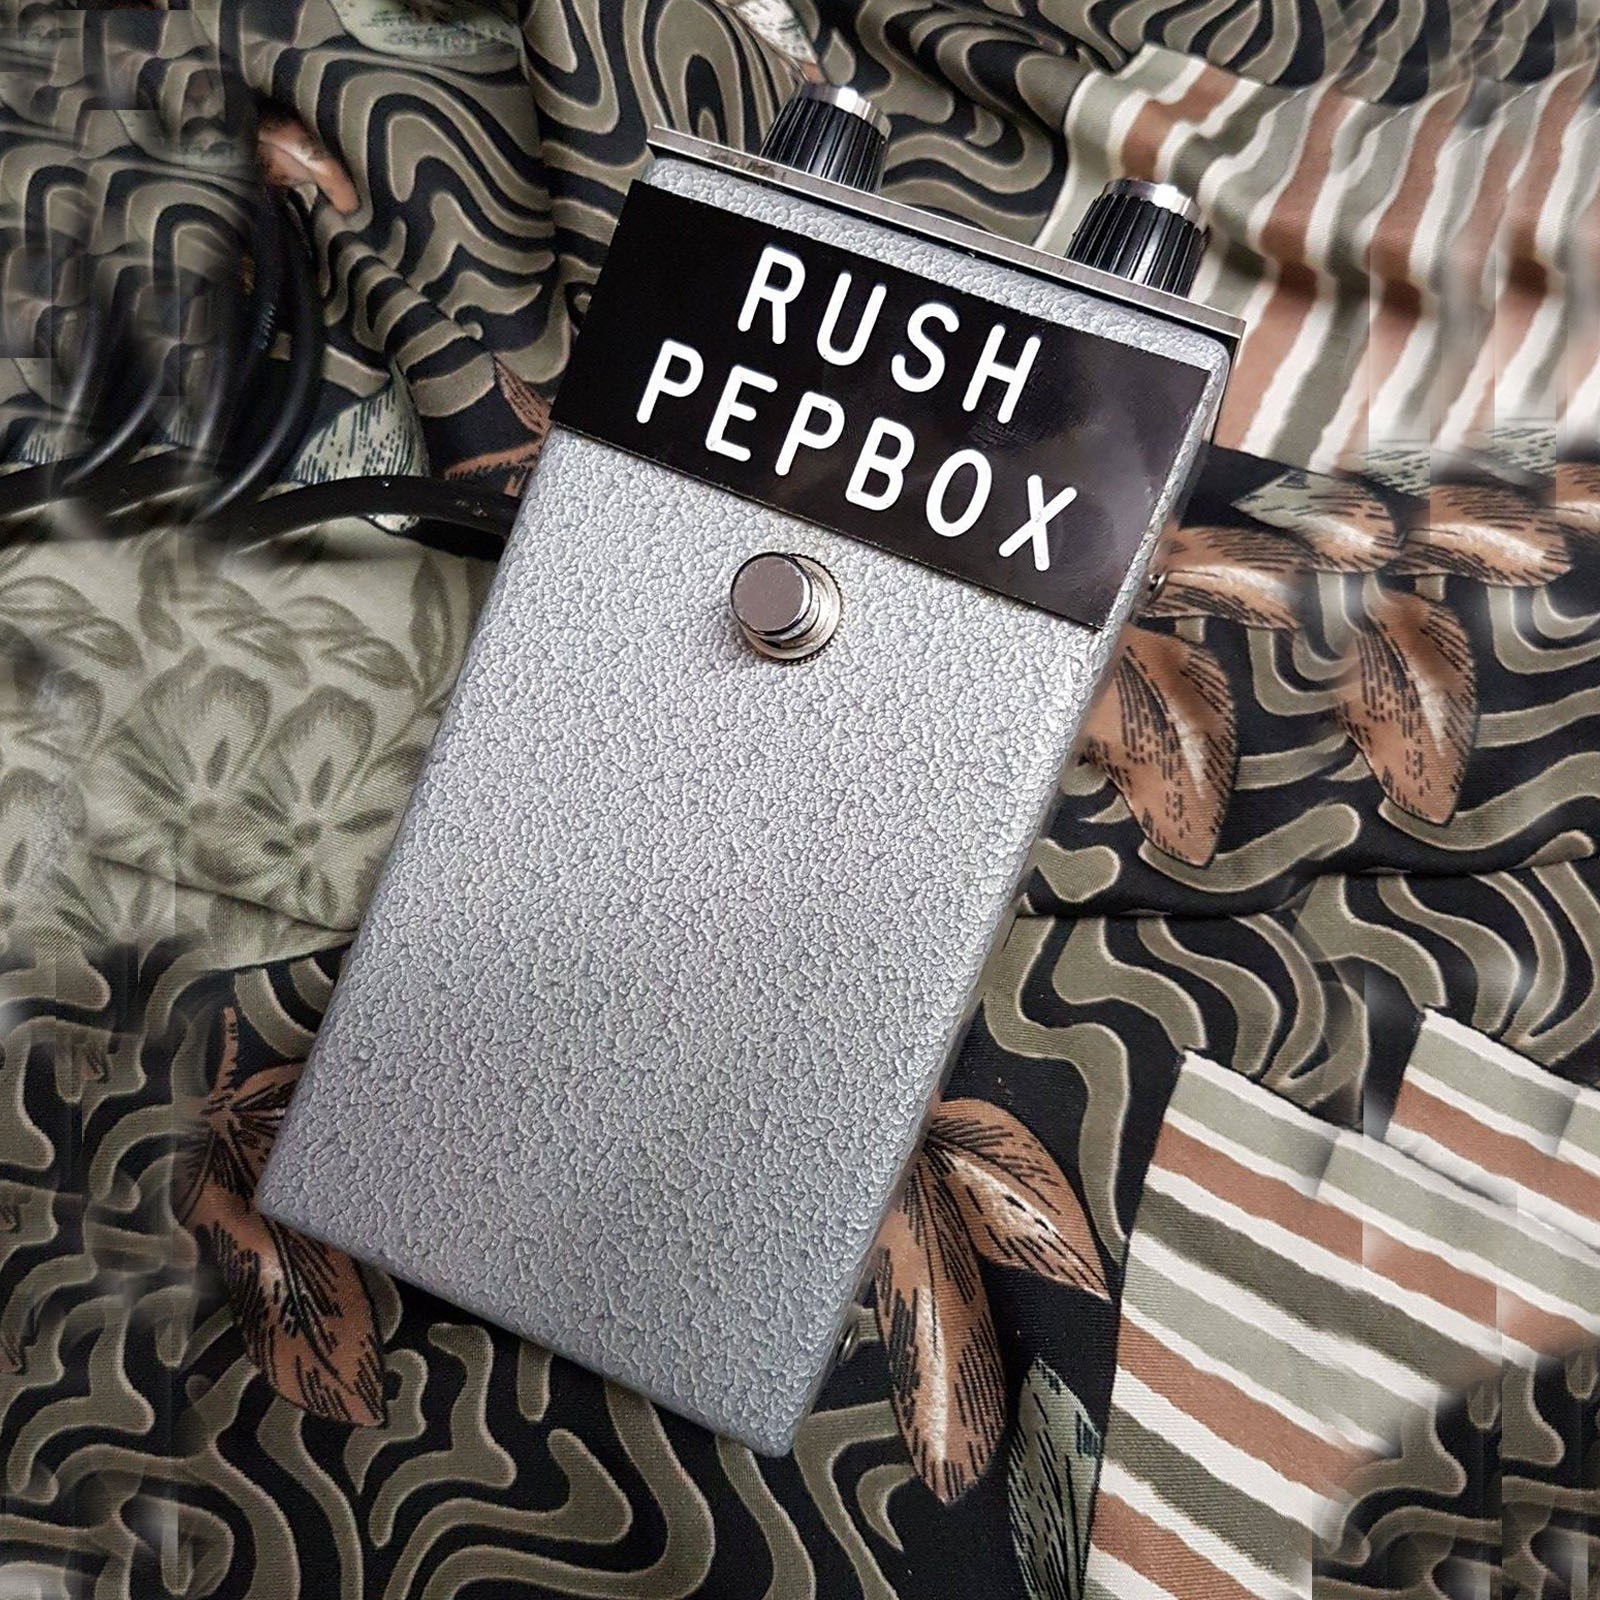 Pepe Rush Pepbox by Lucy Rush